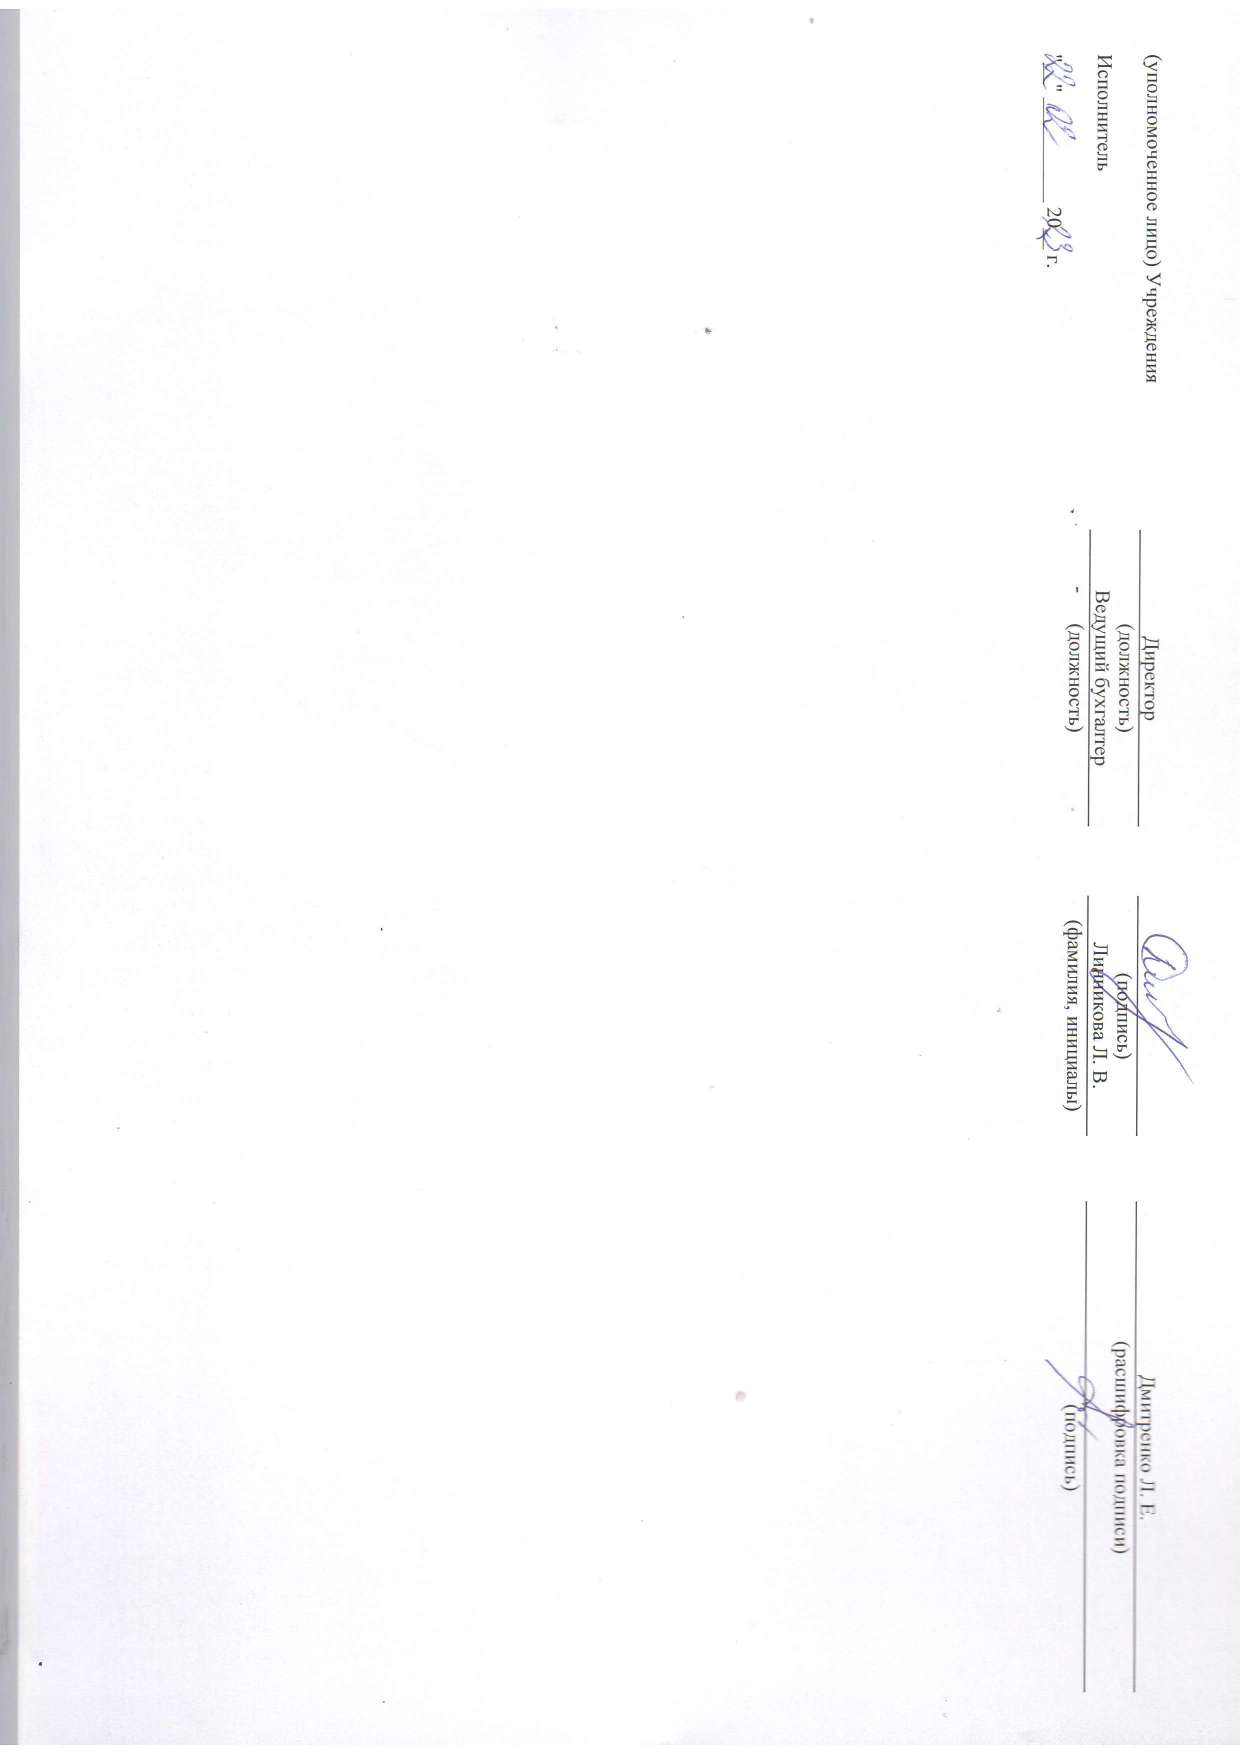 Отчет о результатах деятельности муниципального учреждения на 01.01.2023 г_page-0020.jpg